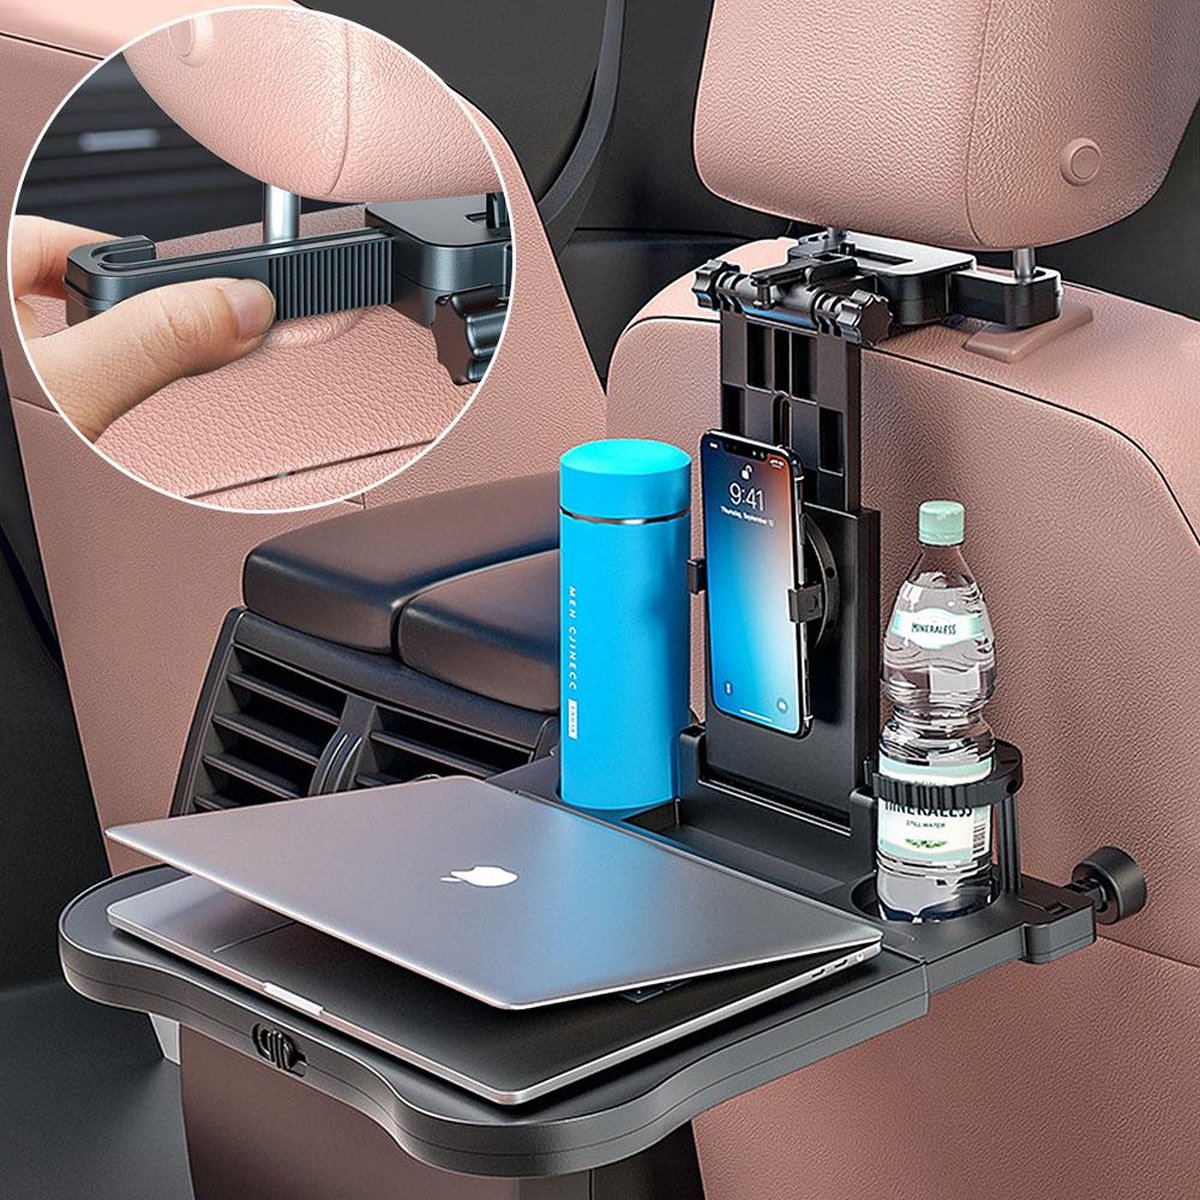 Table de voiture multifonction pour ordinateur portable siège arrière  Snacks plateau